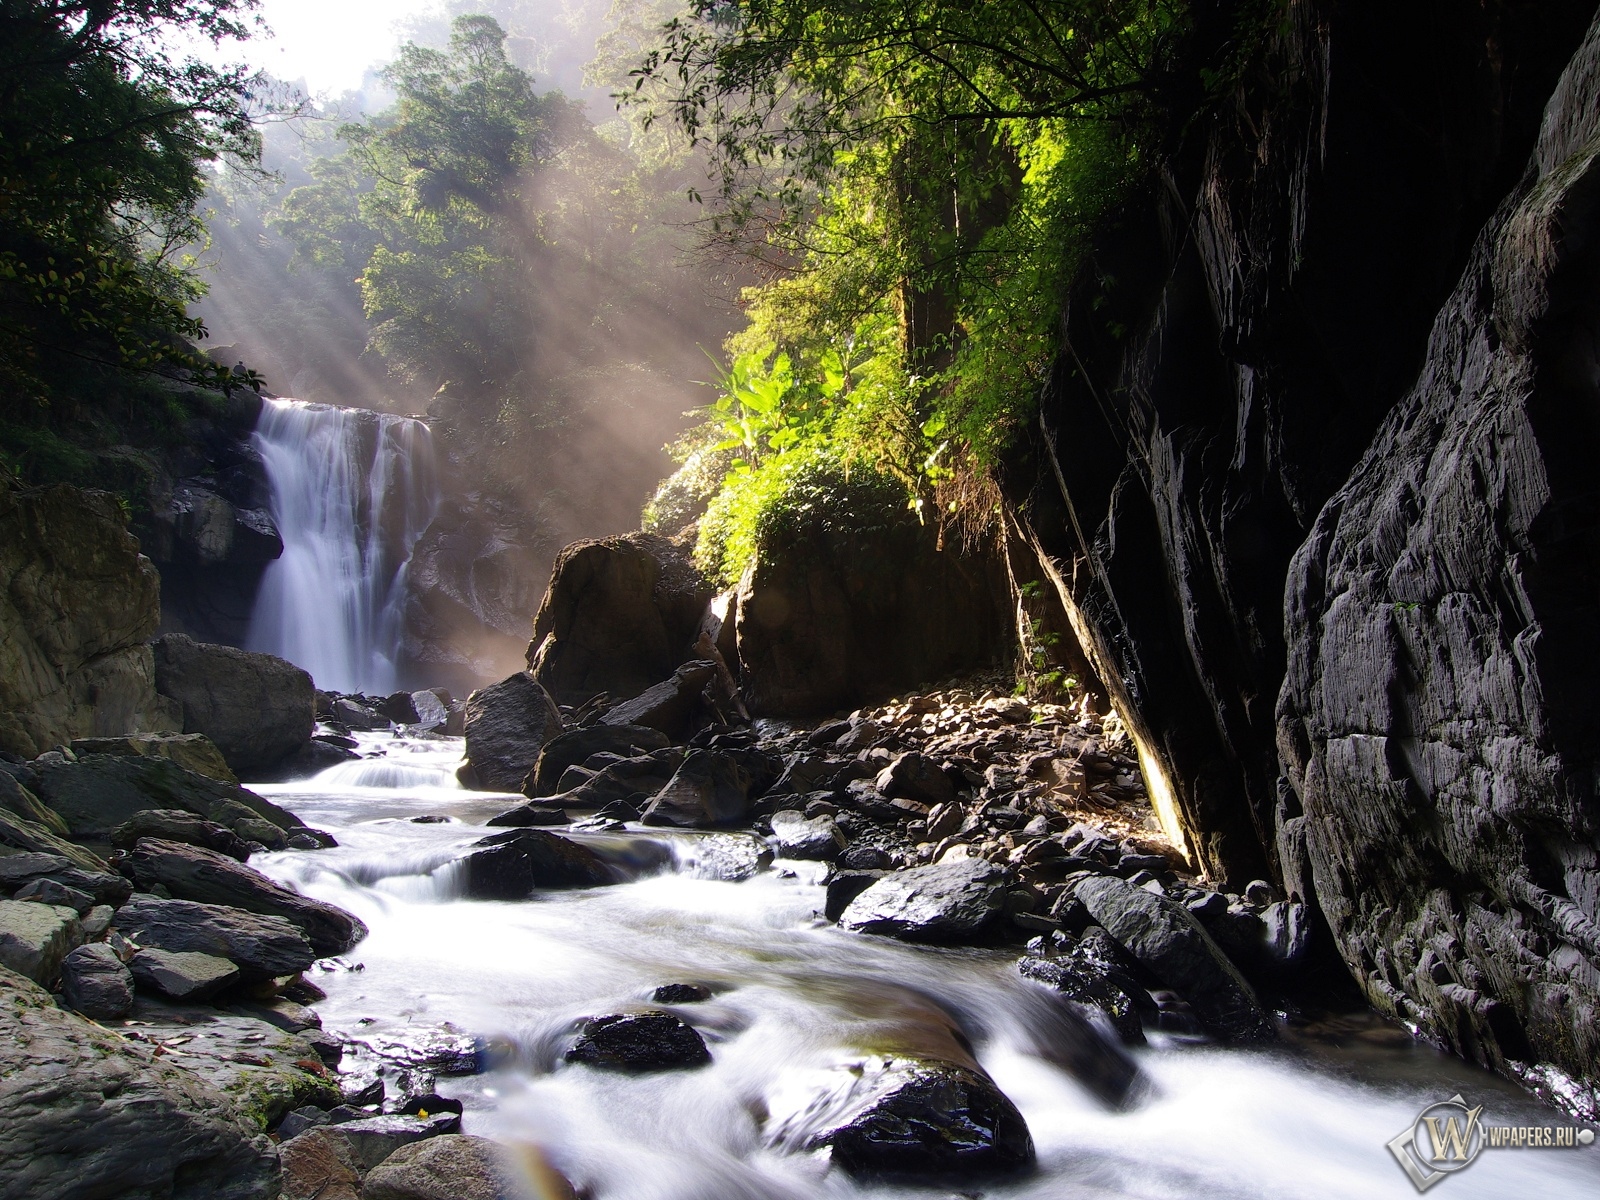 Neidong waterfall 1600x1200